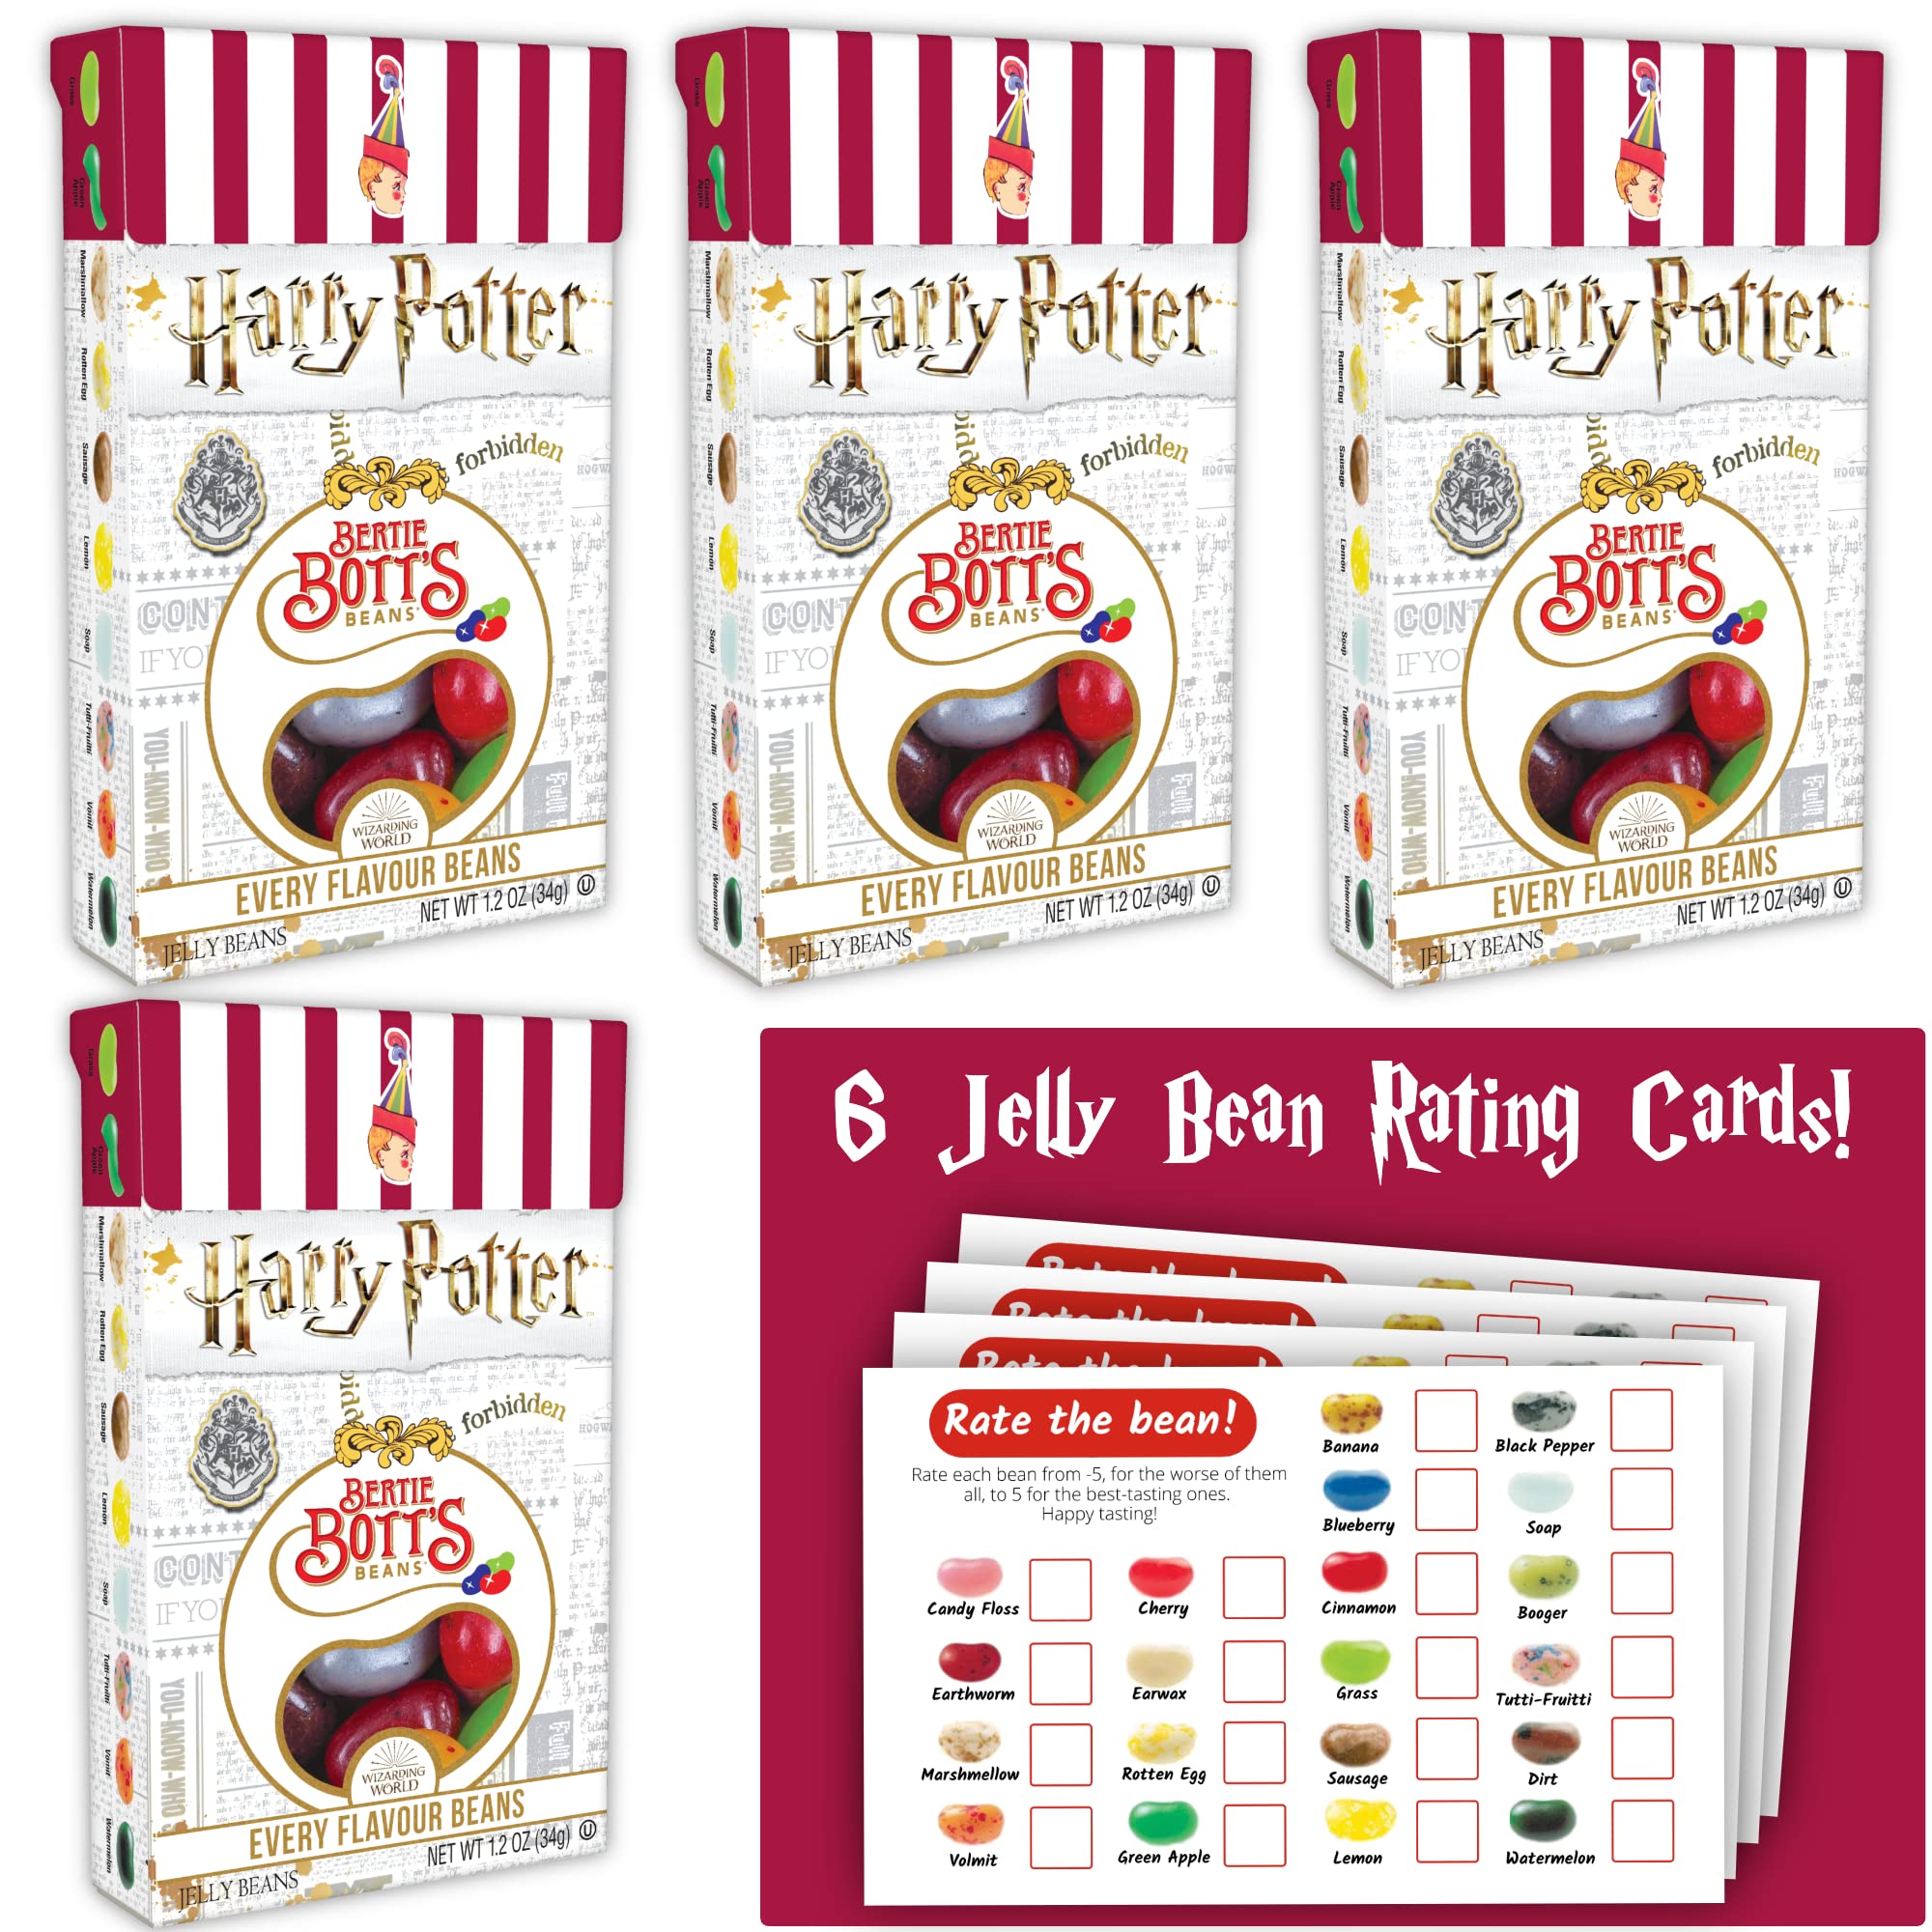 Jelly Belly 1.2 Oz Harry Potter Bertie Botts